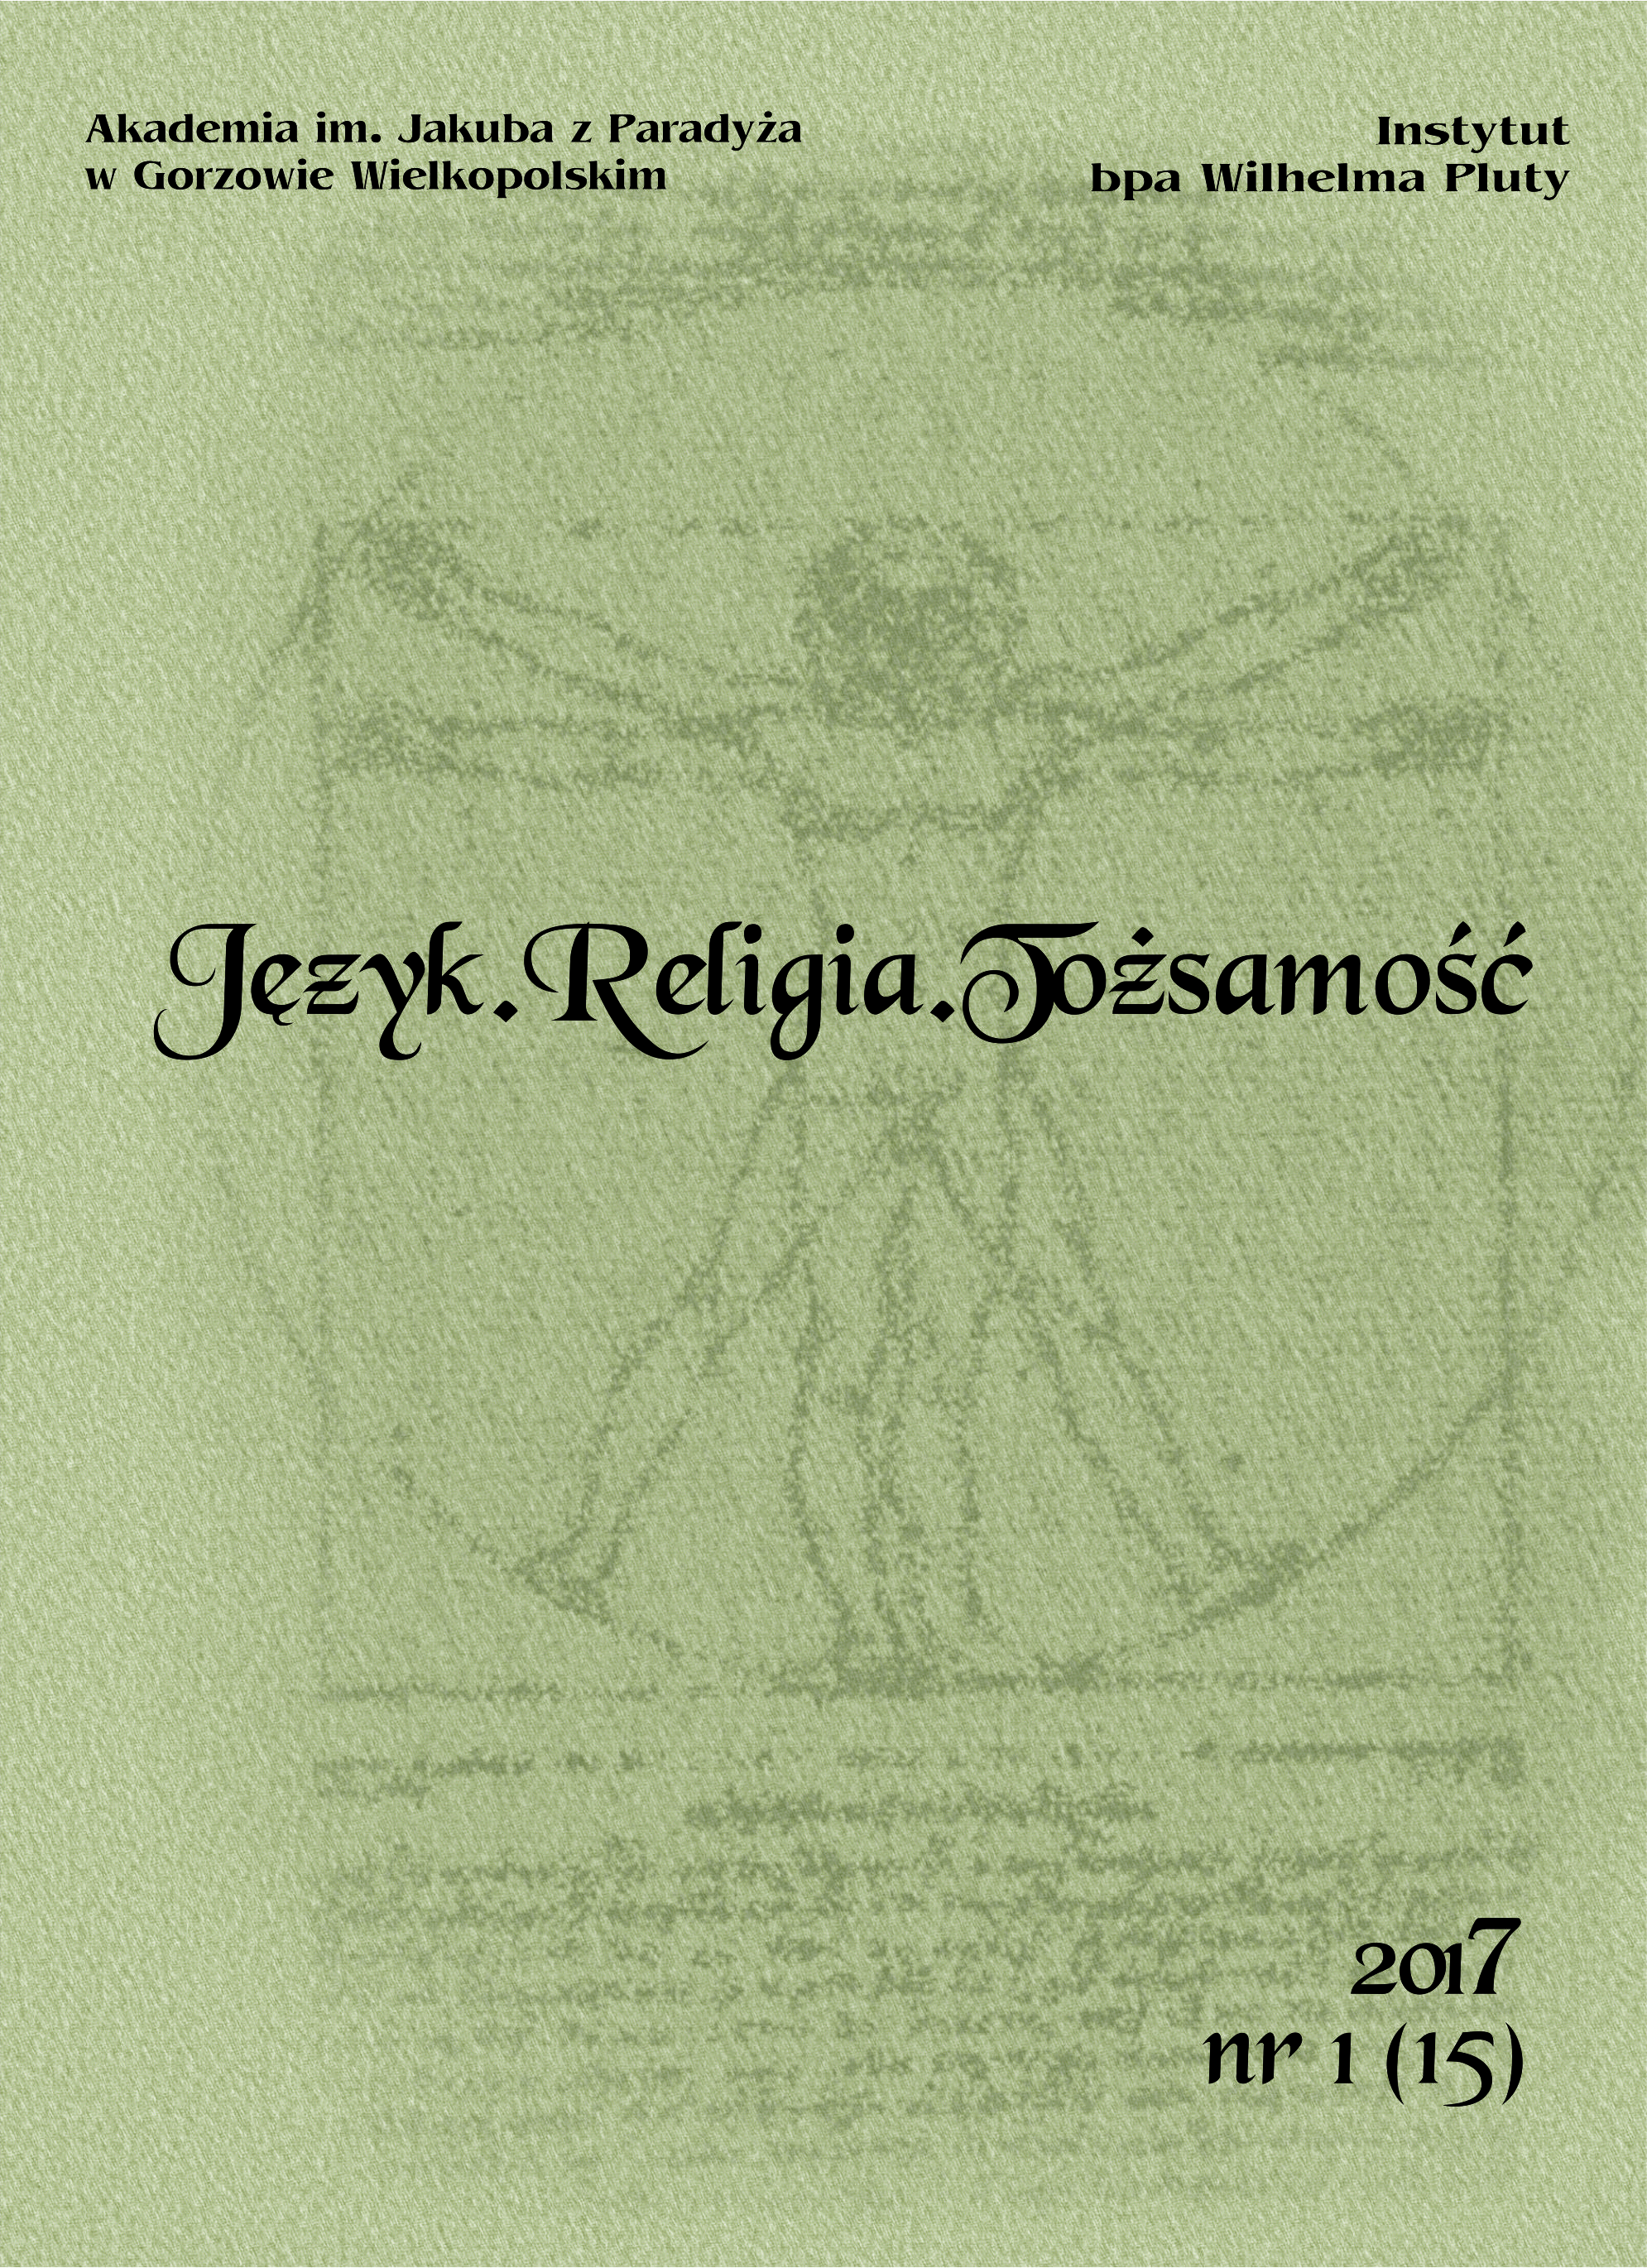 Anioły w tekstach bułgarskiego folkloru